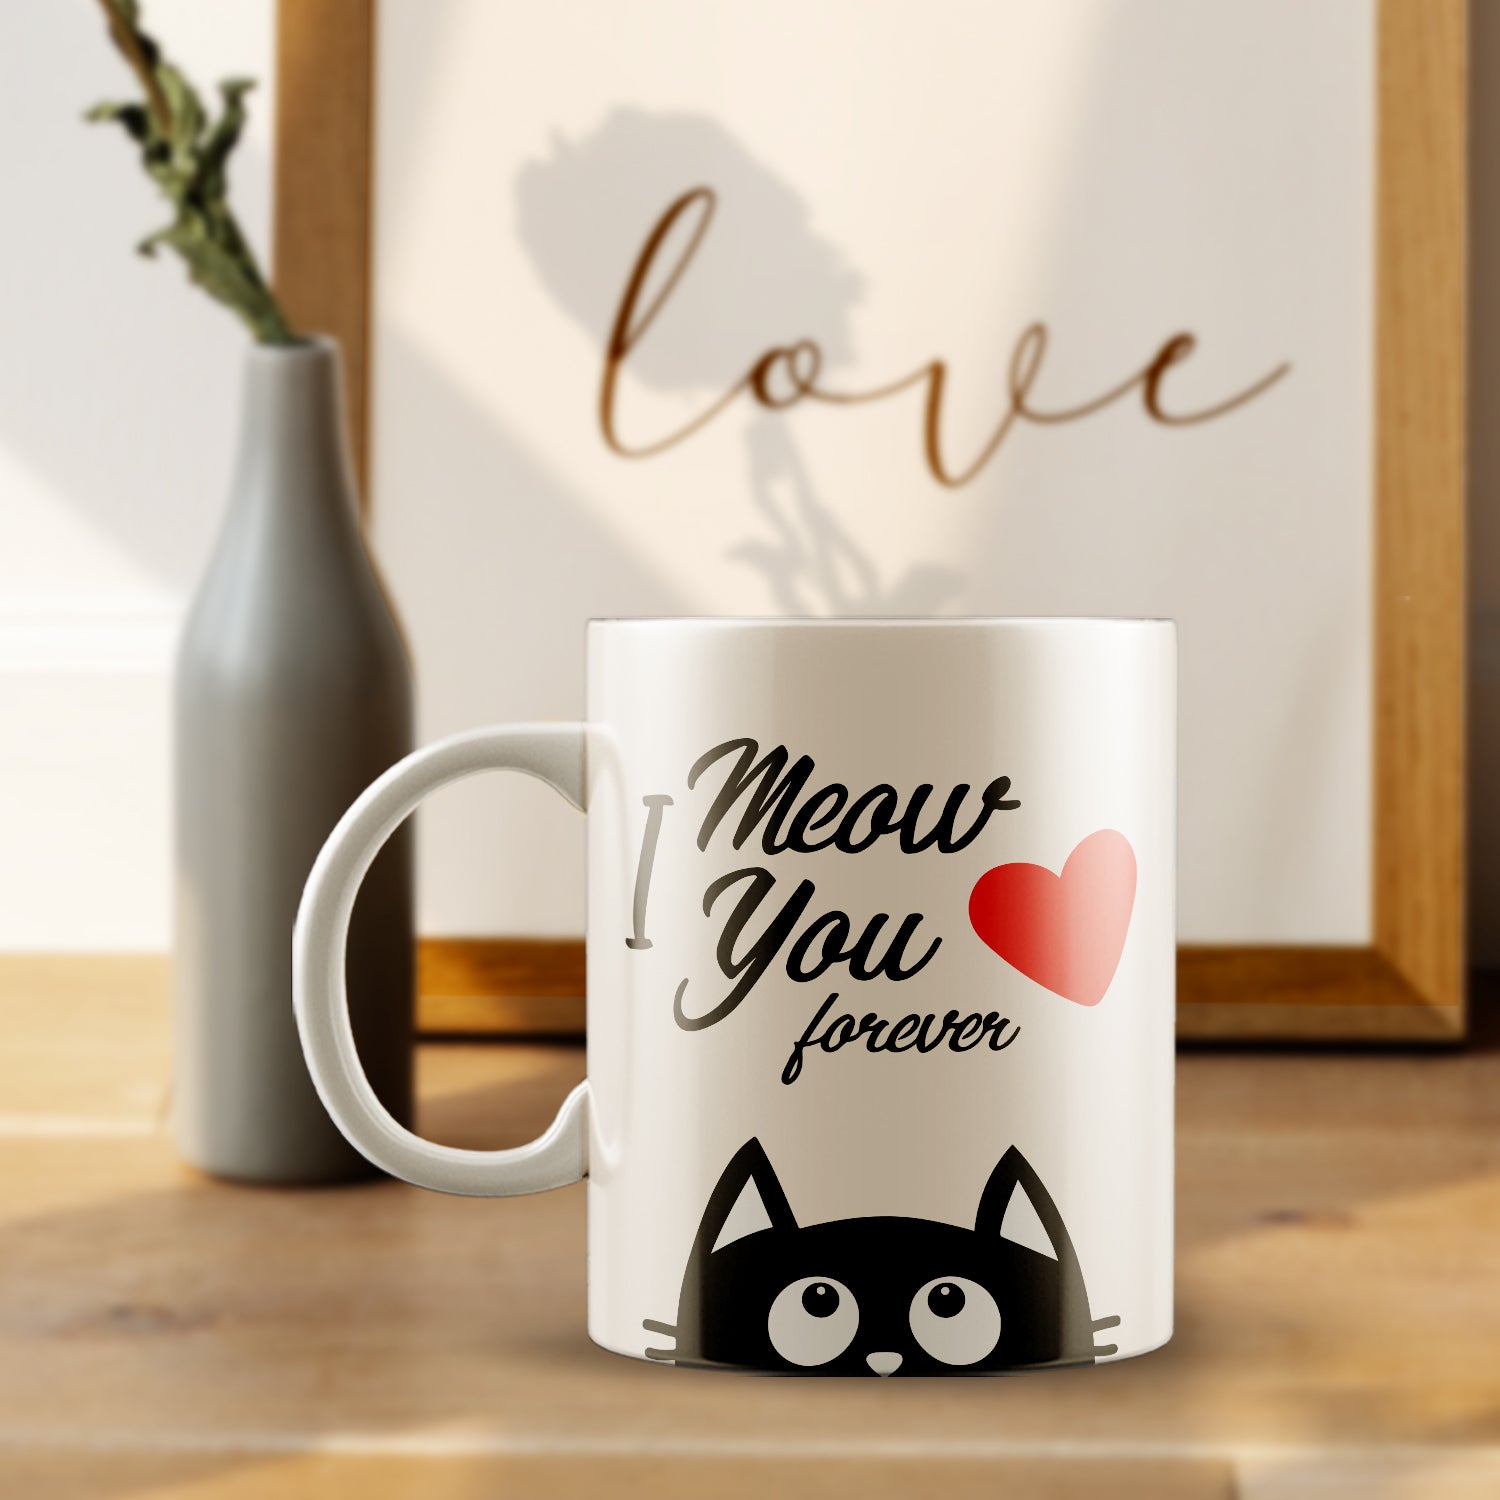 "I Meow you Forever" Valentine Love theme Ceramic Coffee Mug 1